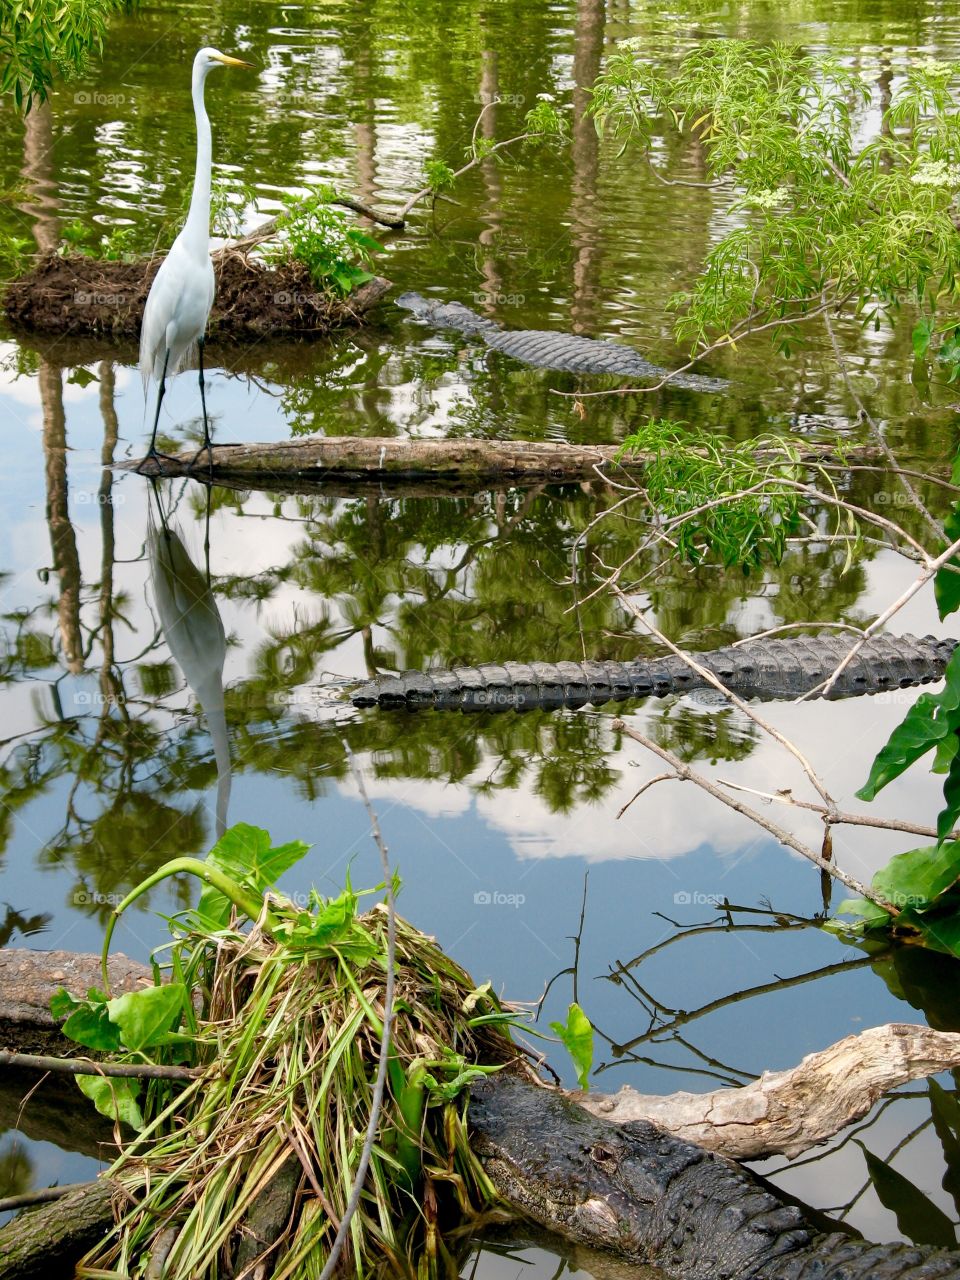 Swamp Logs or Gators?